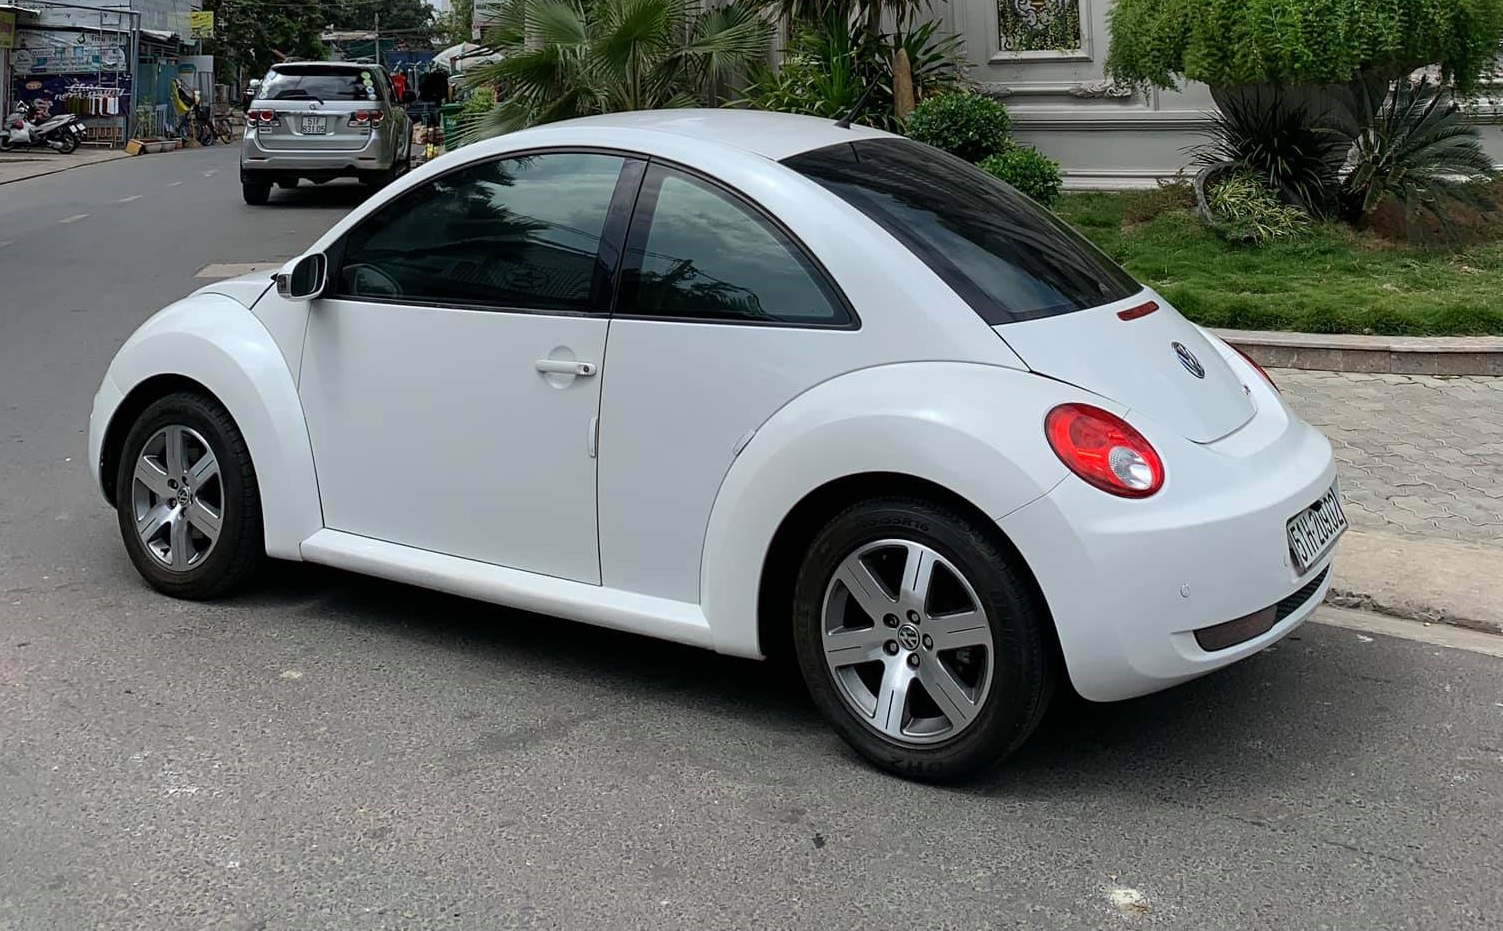 Beetle Volkswagen: Đam mê thiết kế độc đáo và đẳng cấp của các mẫu xe Volkswagen Beetle? Hãy cùng ngắm nhìn hình ảnh chiếc xe này để cảm nhận sức hút và phong cách độc đáo của nó!